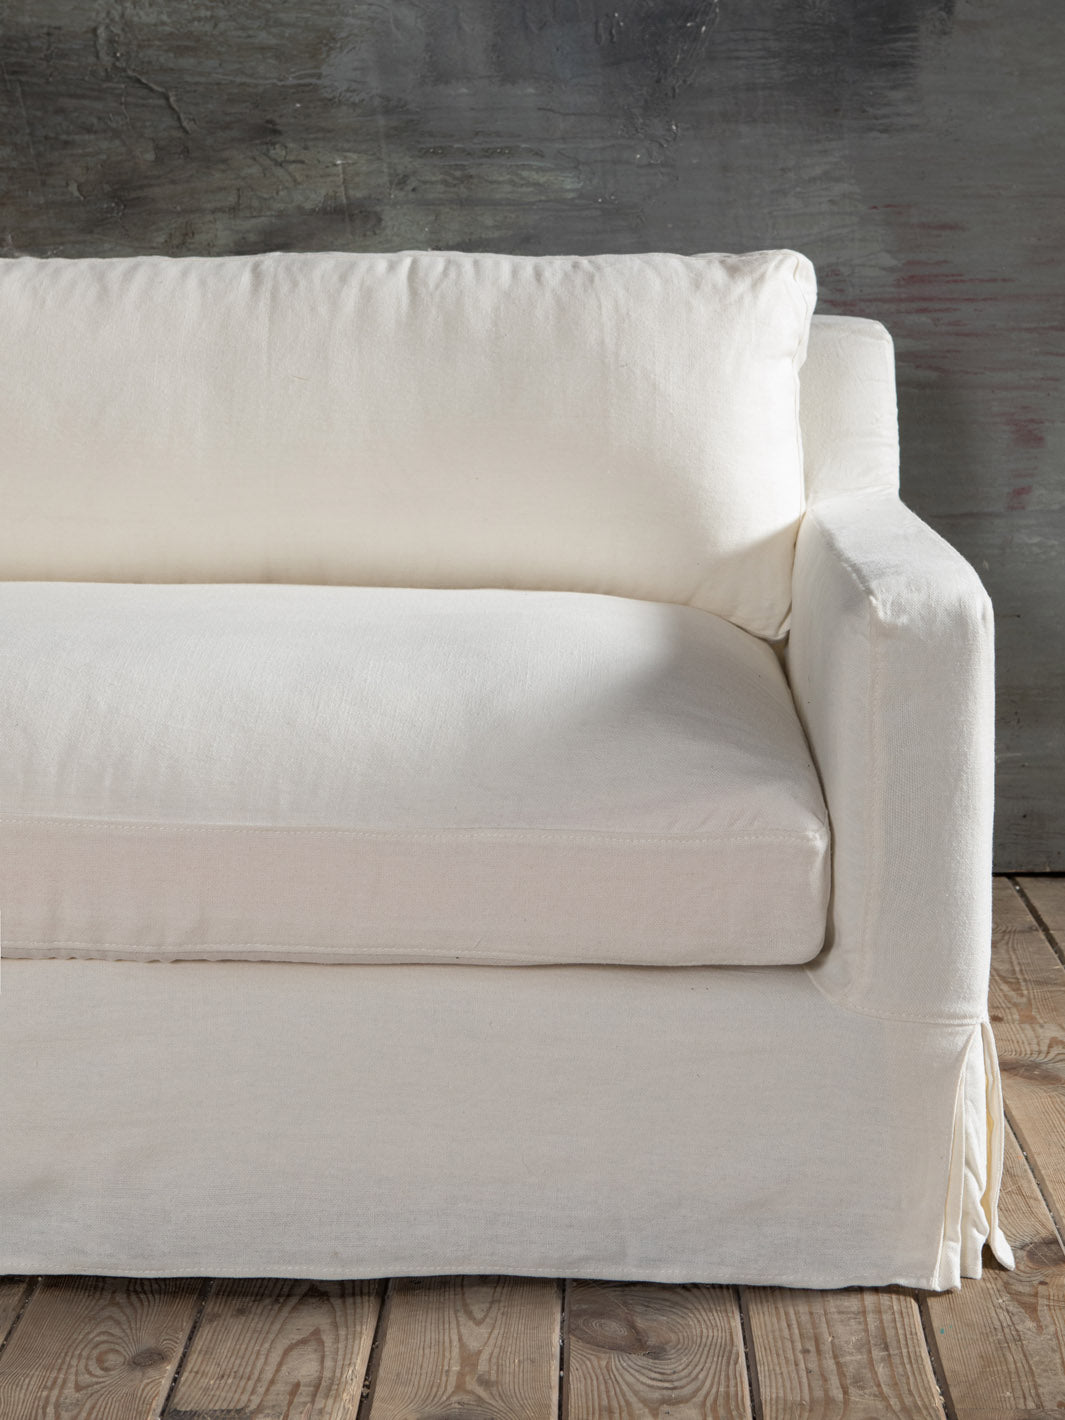 Antwerp sofa in Ivory linen